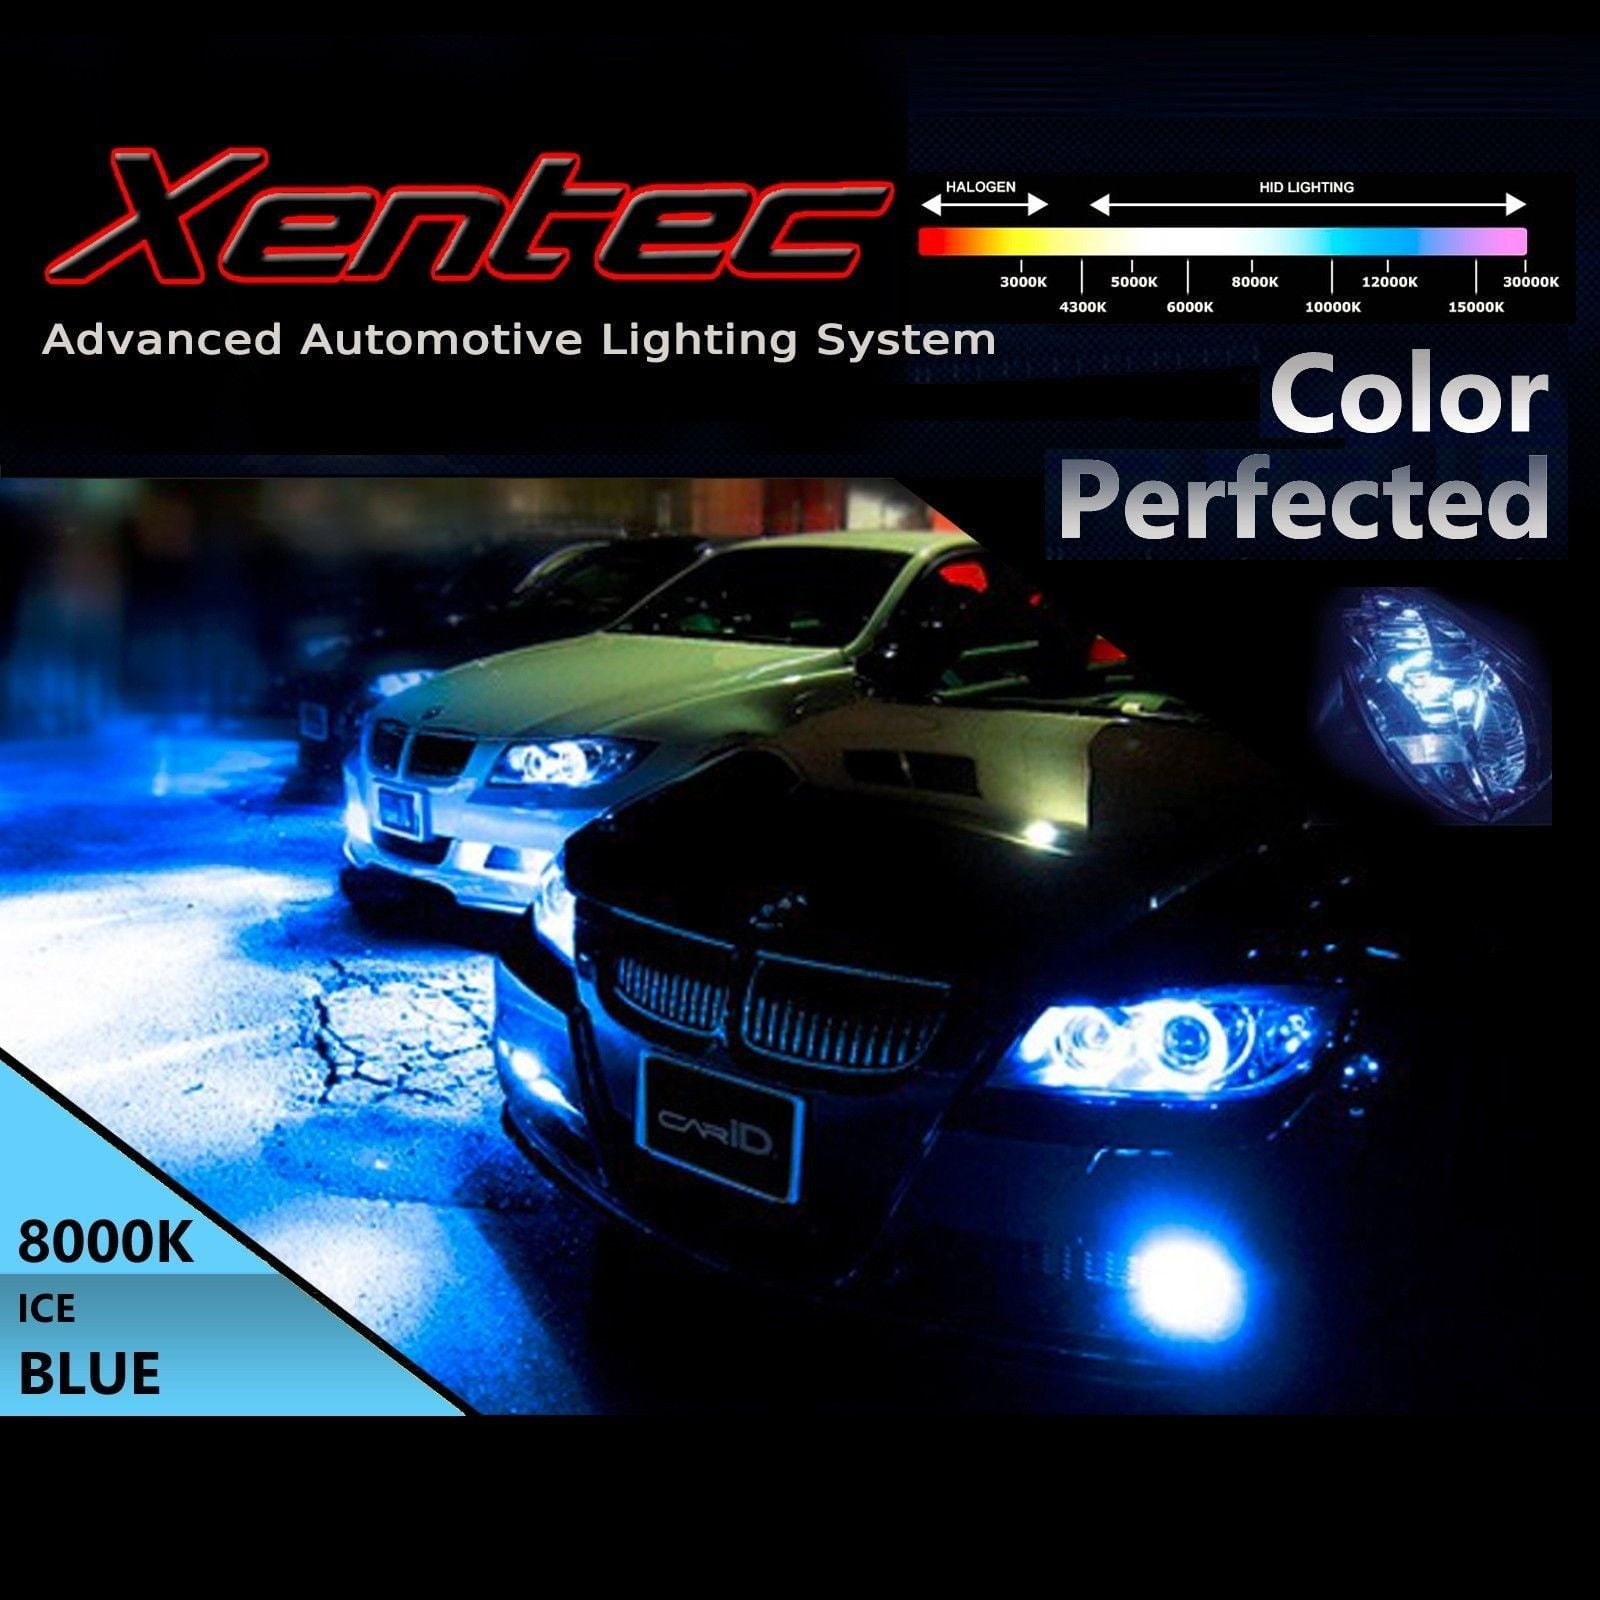 XENTEC LED HID Headlight kit 9006 White for 1998-2002 Chevrolet Camaro